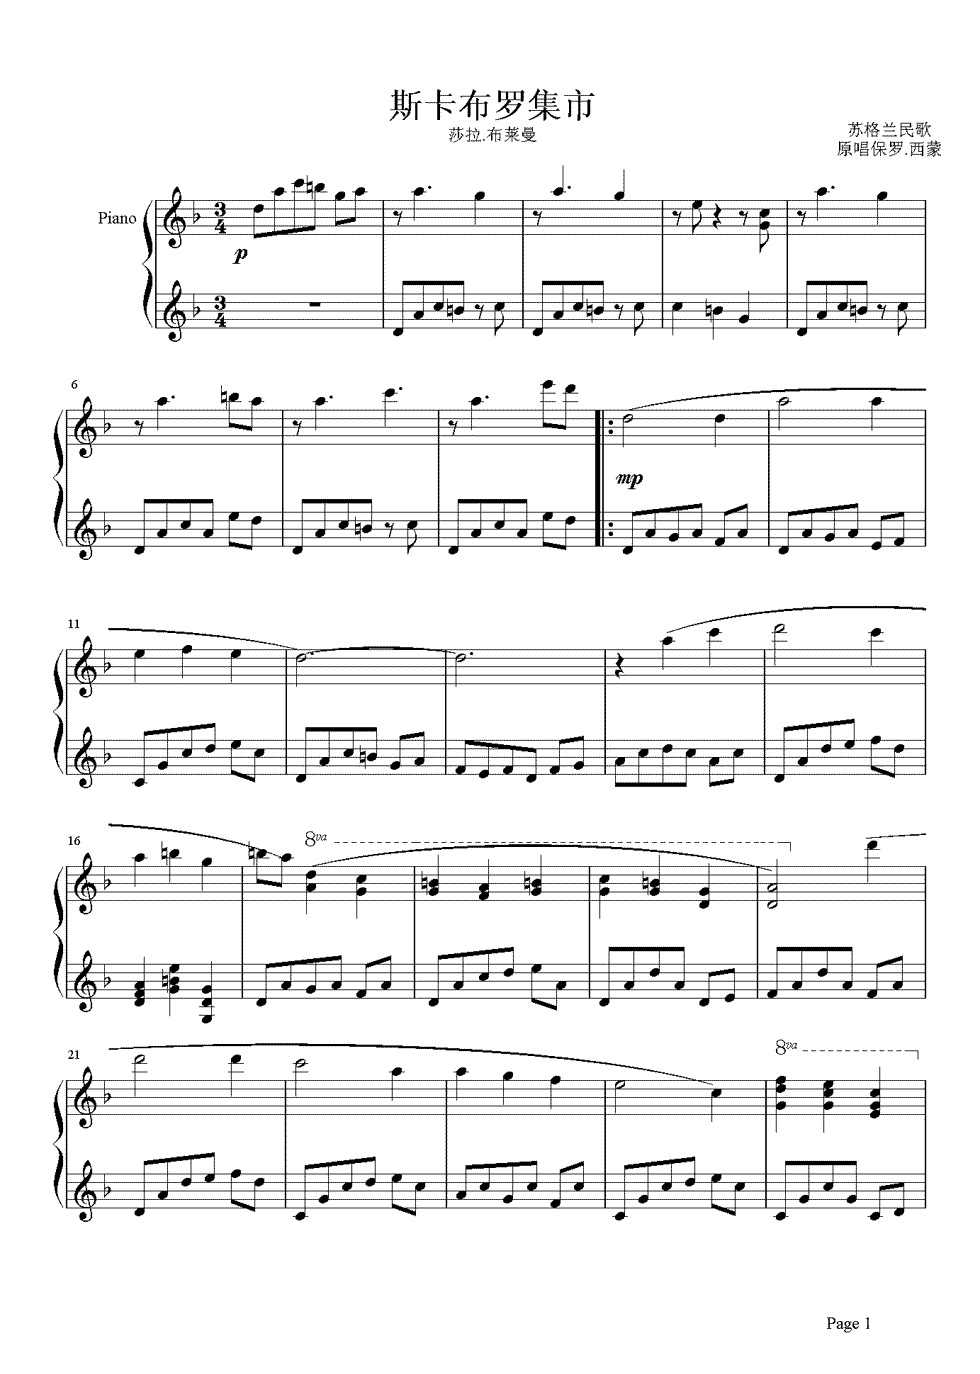 《斯卡保罗集市》的钢琴谱钢琴曲谱 - Sarah Brightman